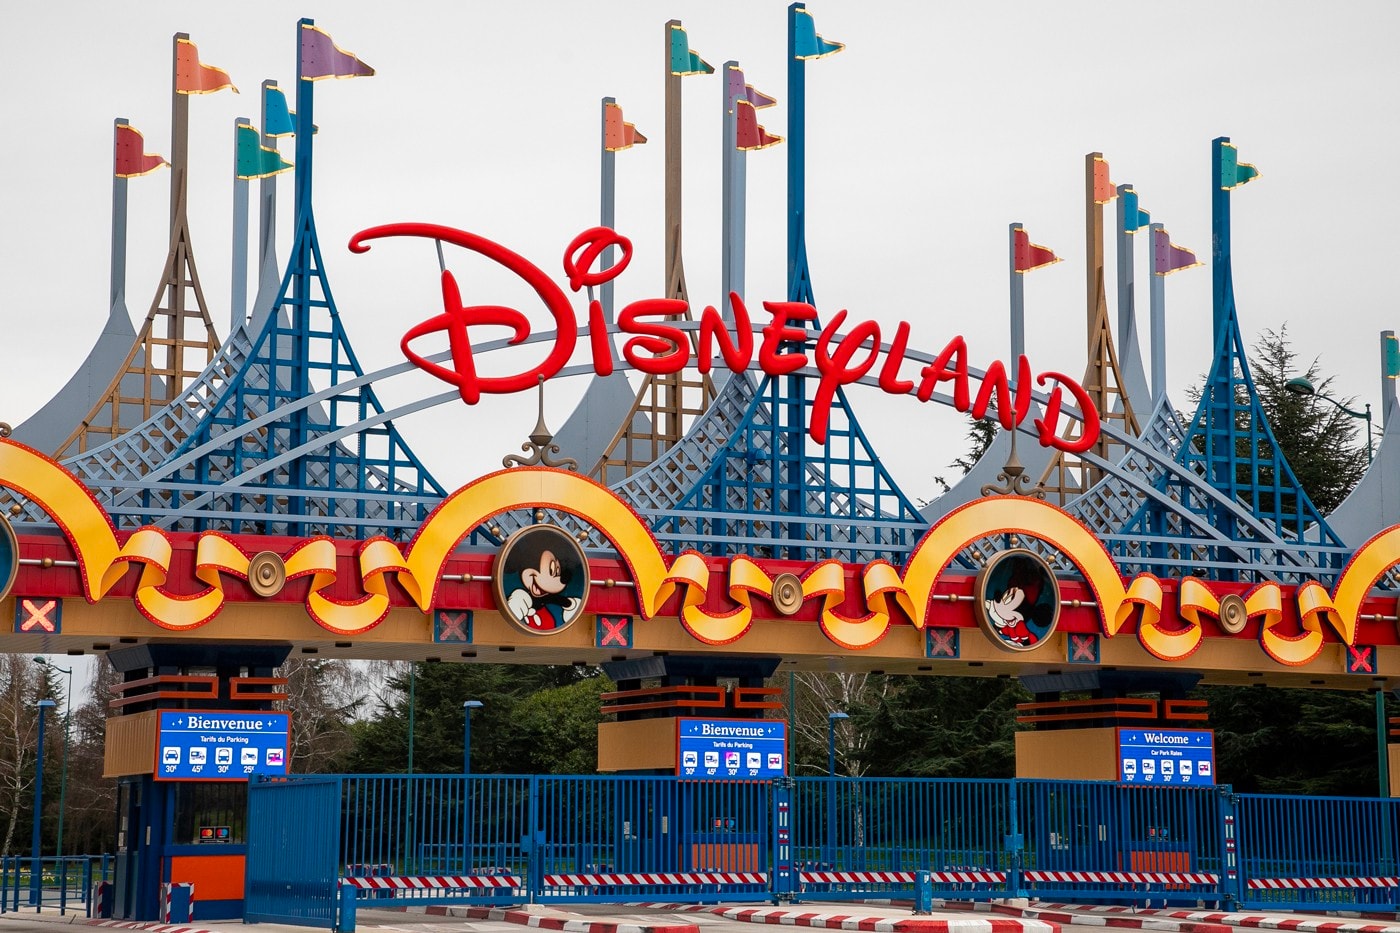 Disneyland disney california adventure Phased Reopening Postponed coronavirus covid 19 gavin newsom